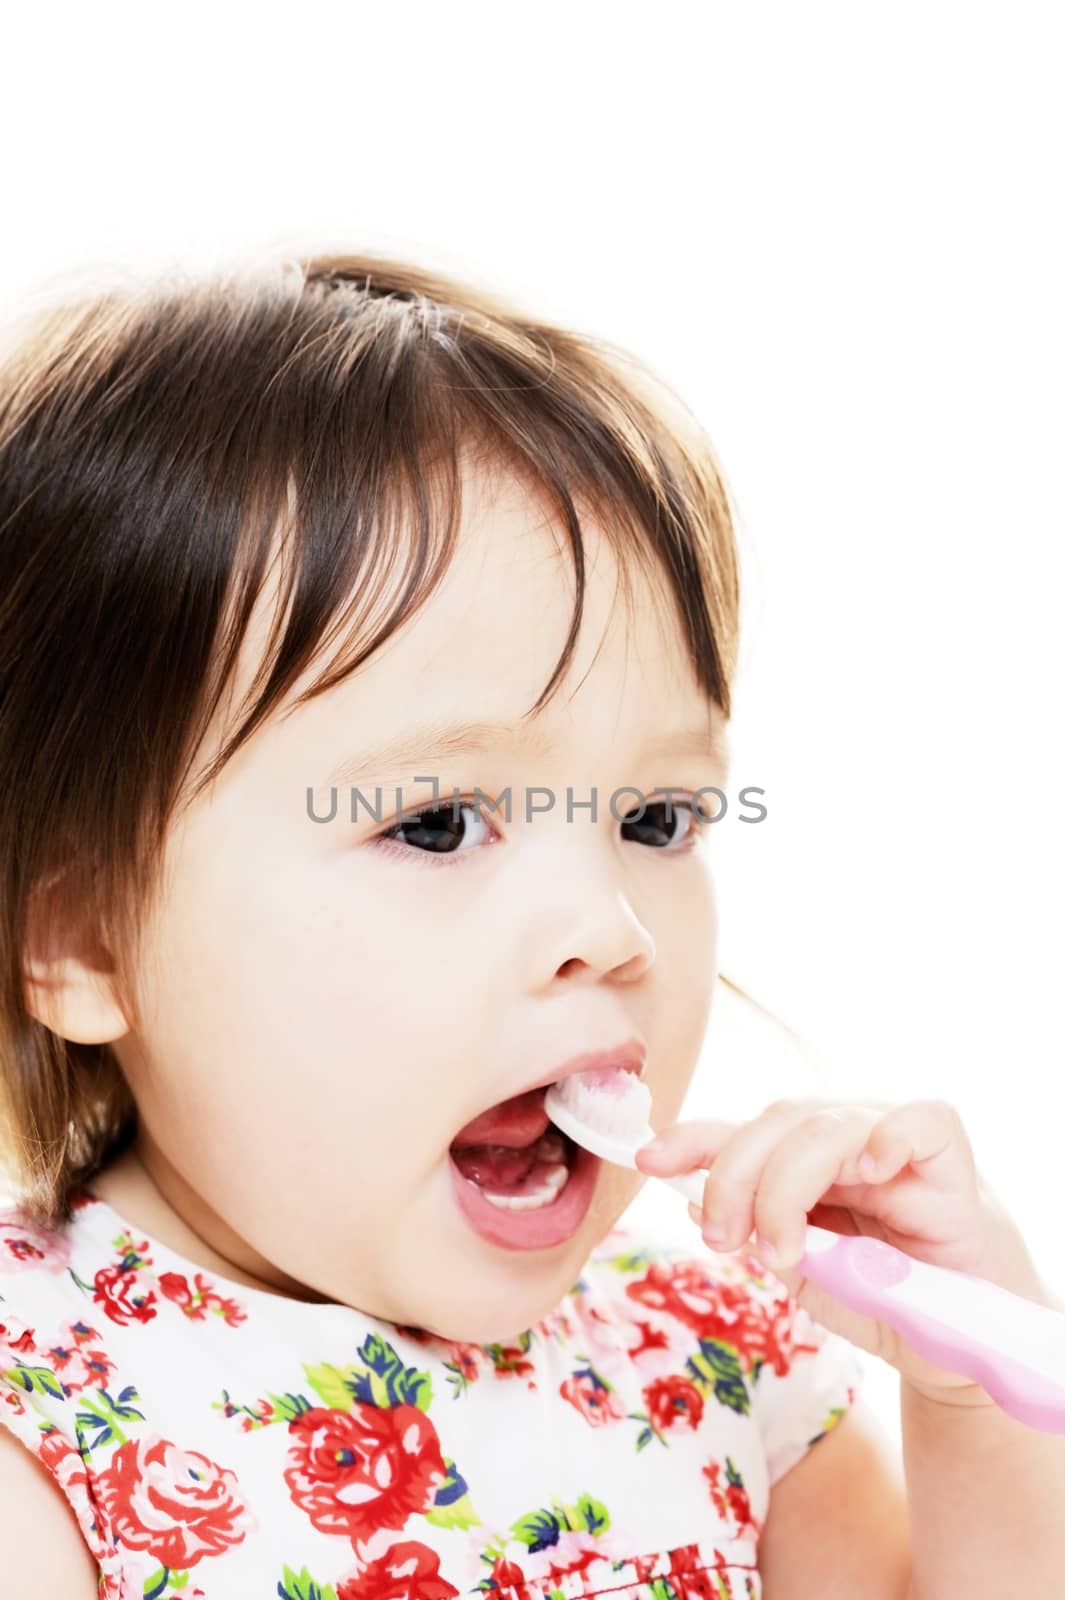 Little girl enjoys brushing her teeth